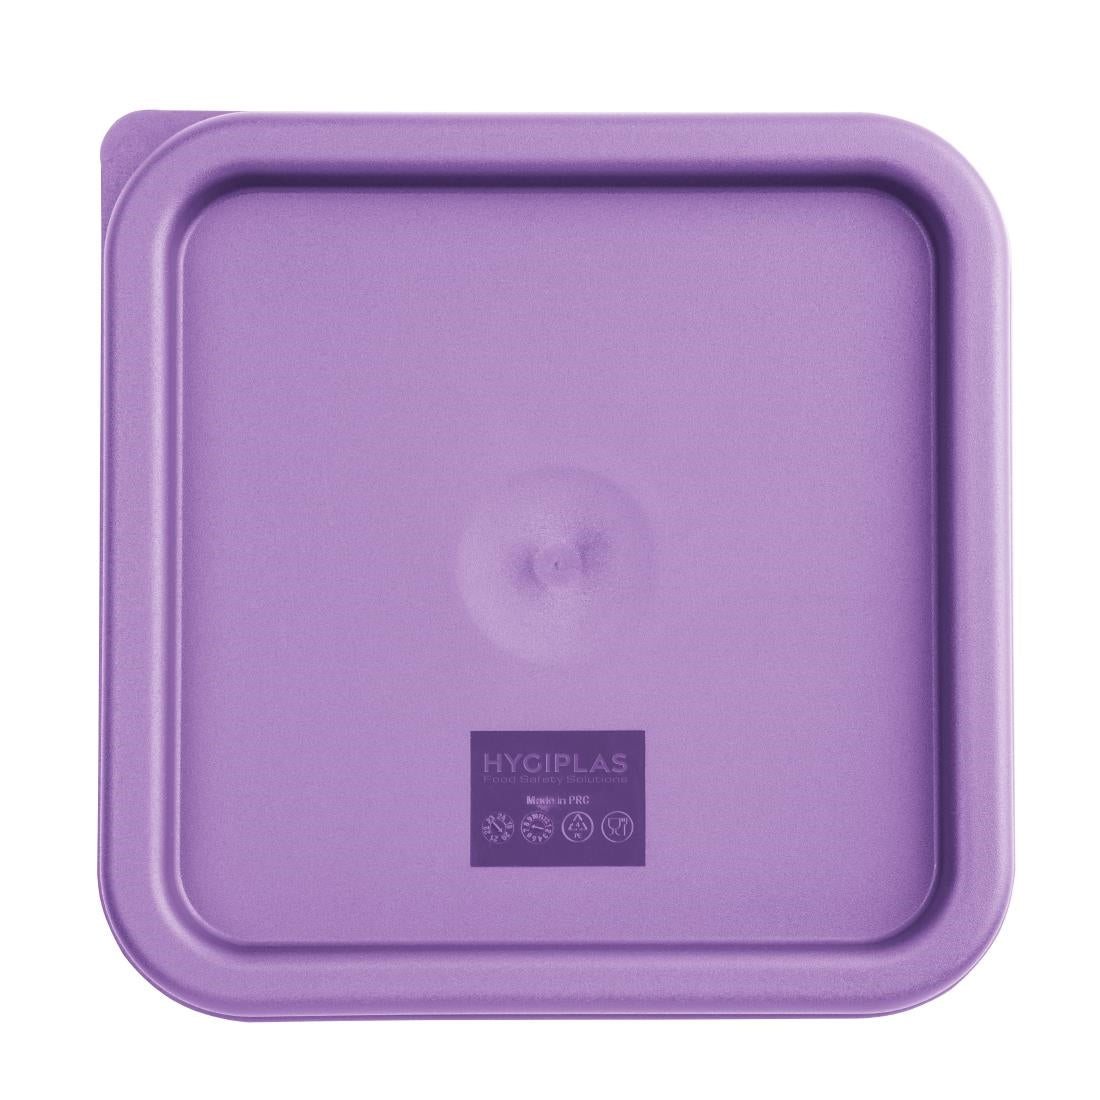 FX144 Hygiplas Square Food Storage Container Lid Purple Medium